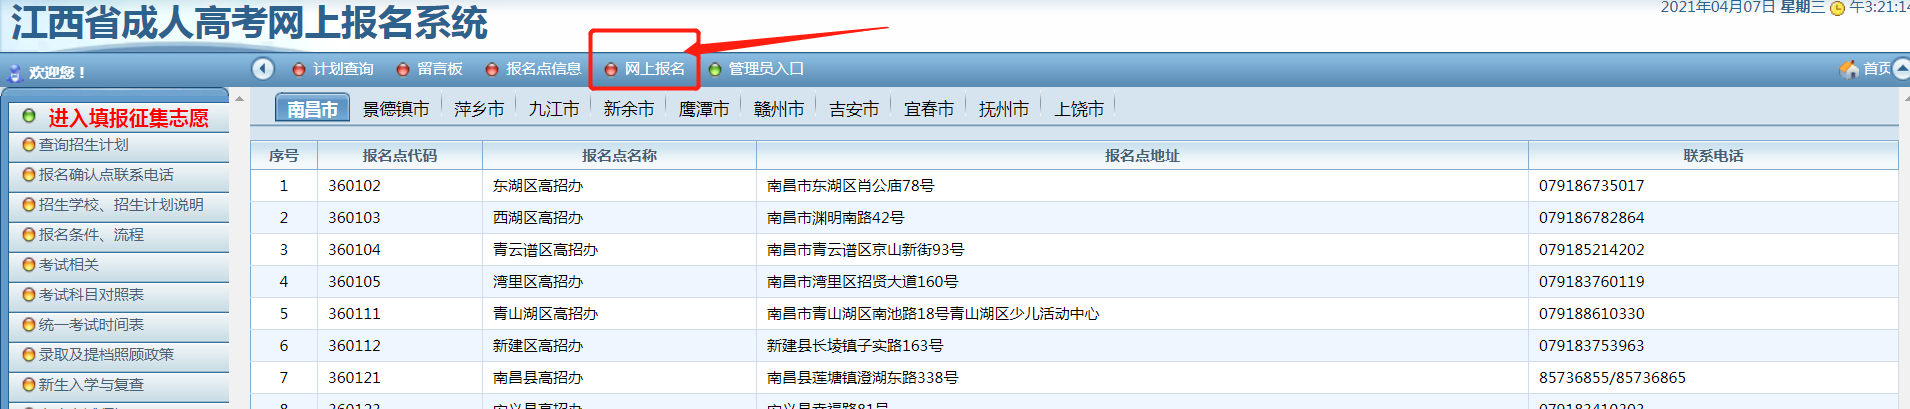 江西省成人高考网上报名系统